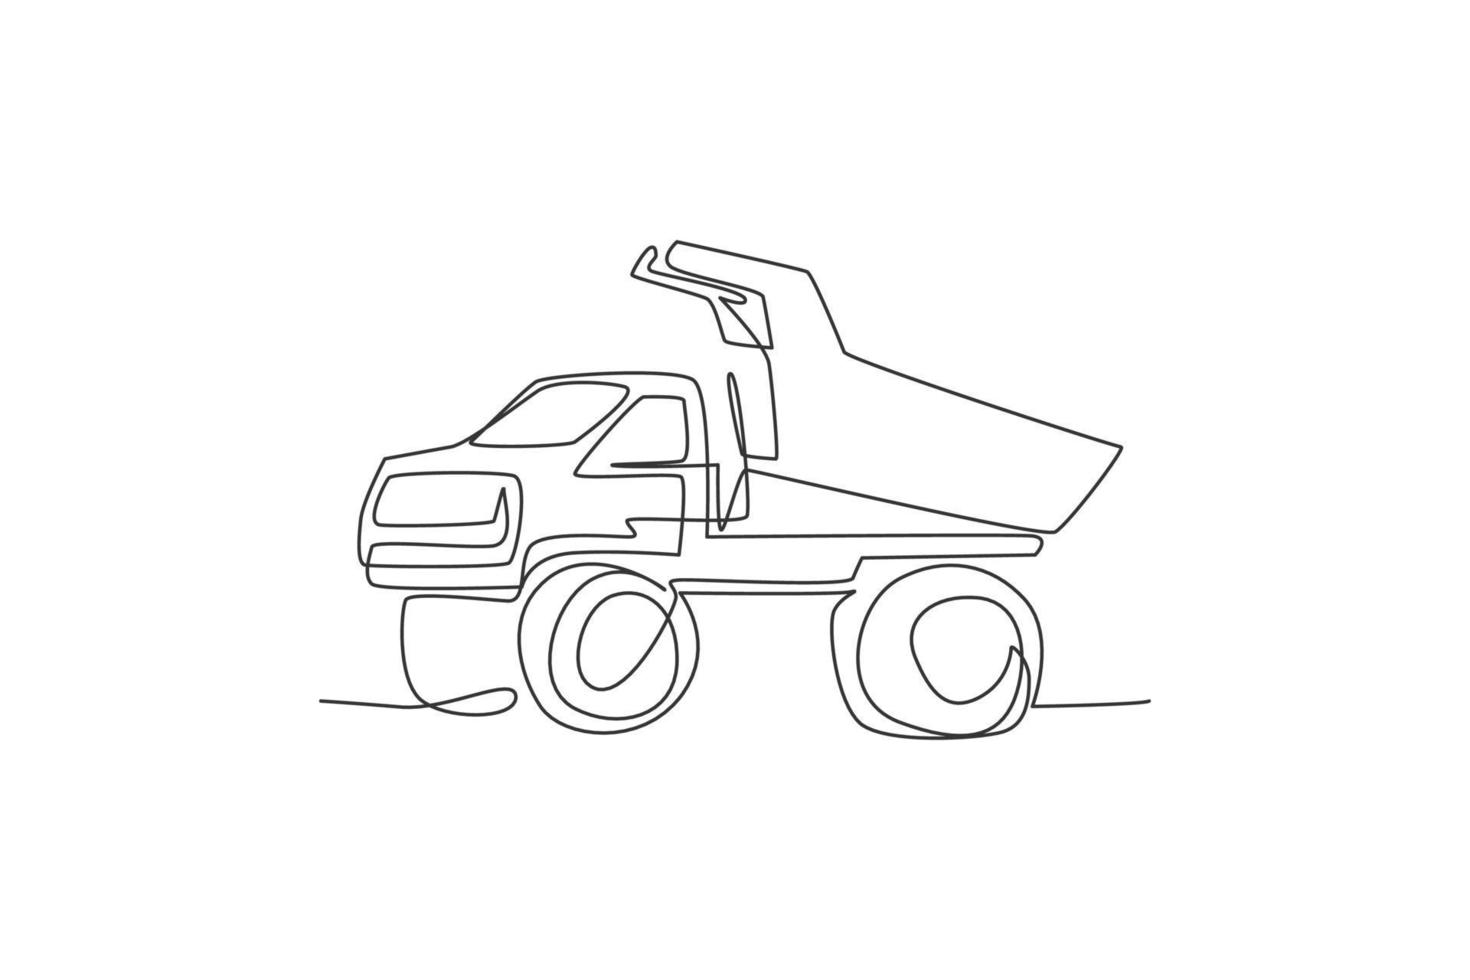 un disegno a linea singola di un grande camion con cassone ribaltabile minerario per caricare carbone e prodotti minerari illustrazione vettoriale. concetto di veicolo di trasporto pesante. grafica moderna per disegnare linee continue vettore